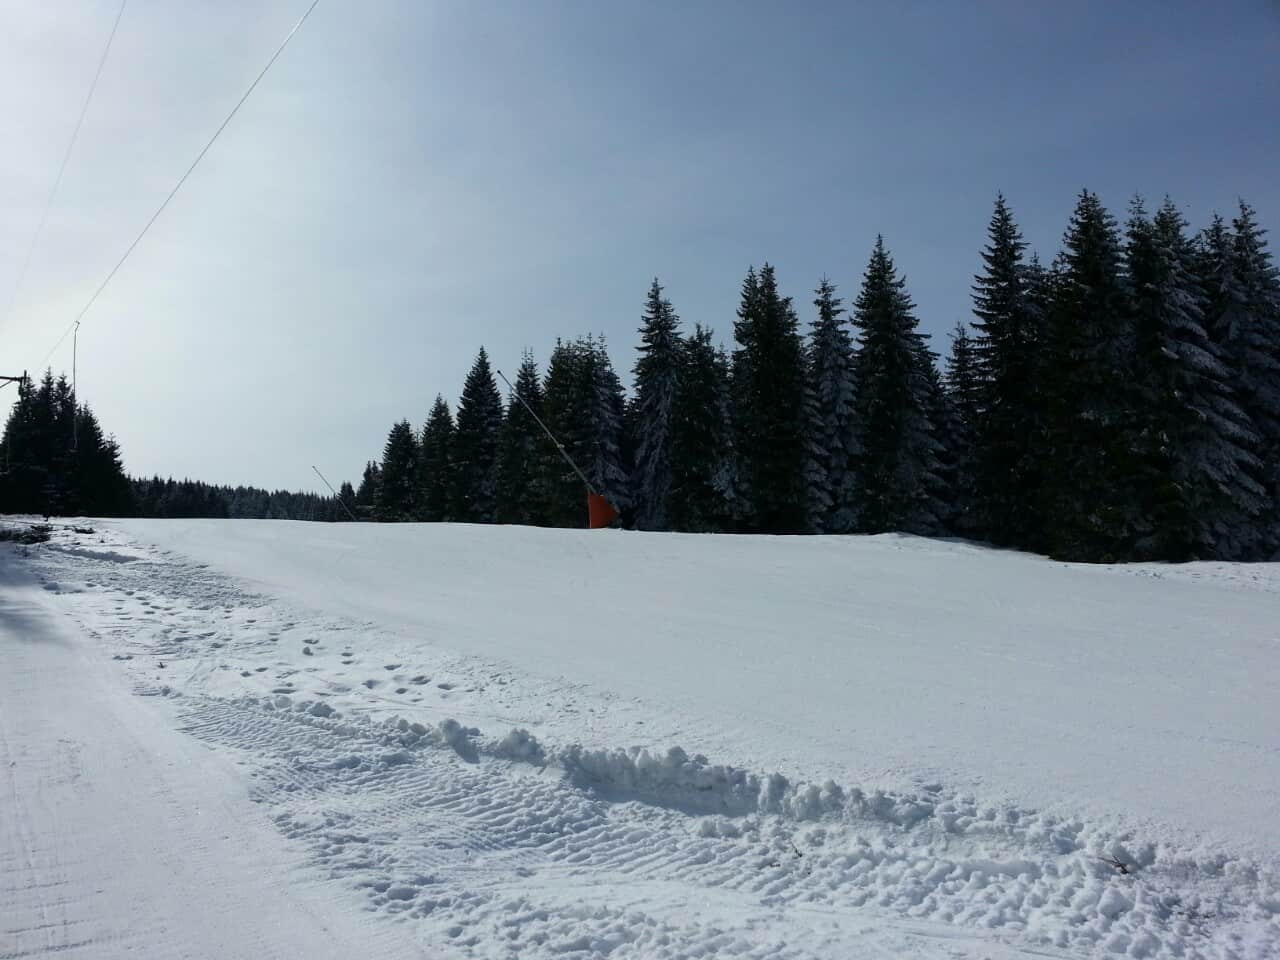 Prvi prolećni vikend je idealan za skijanje na Kopaoniku I ovog vikenda na Kopaoniku skijaše i bordere očekuje odlično skijanje sa dosta snega. Iako je poče ...